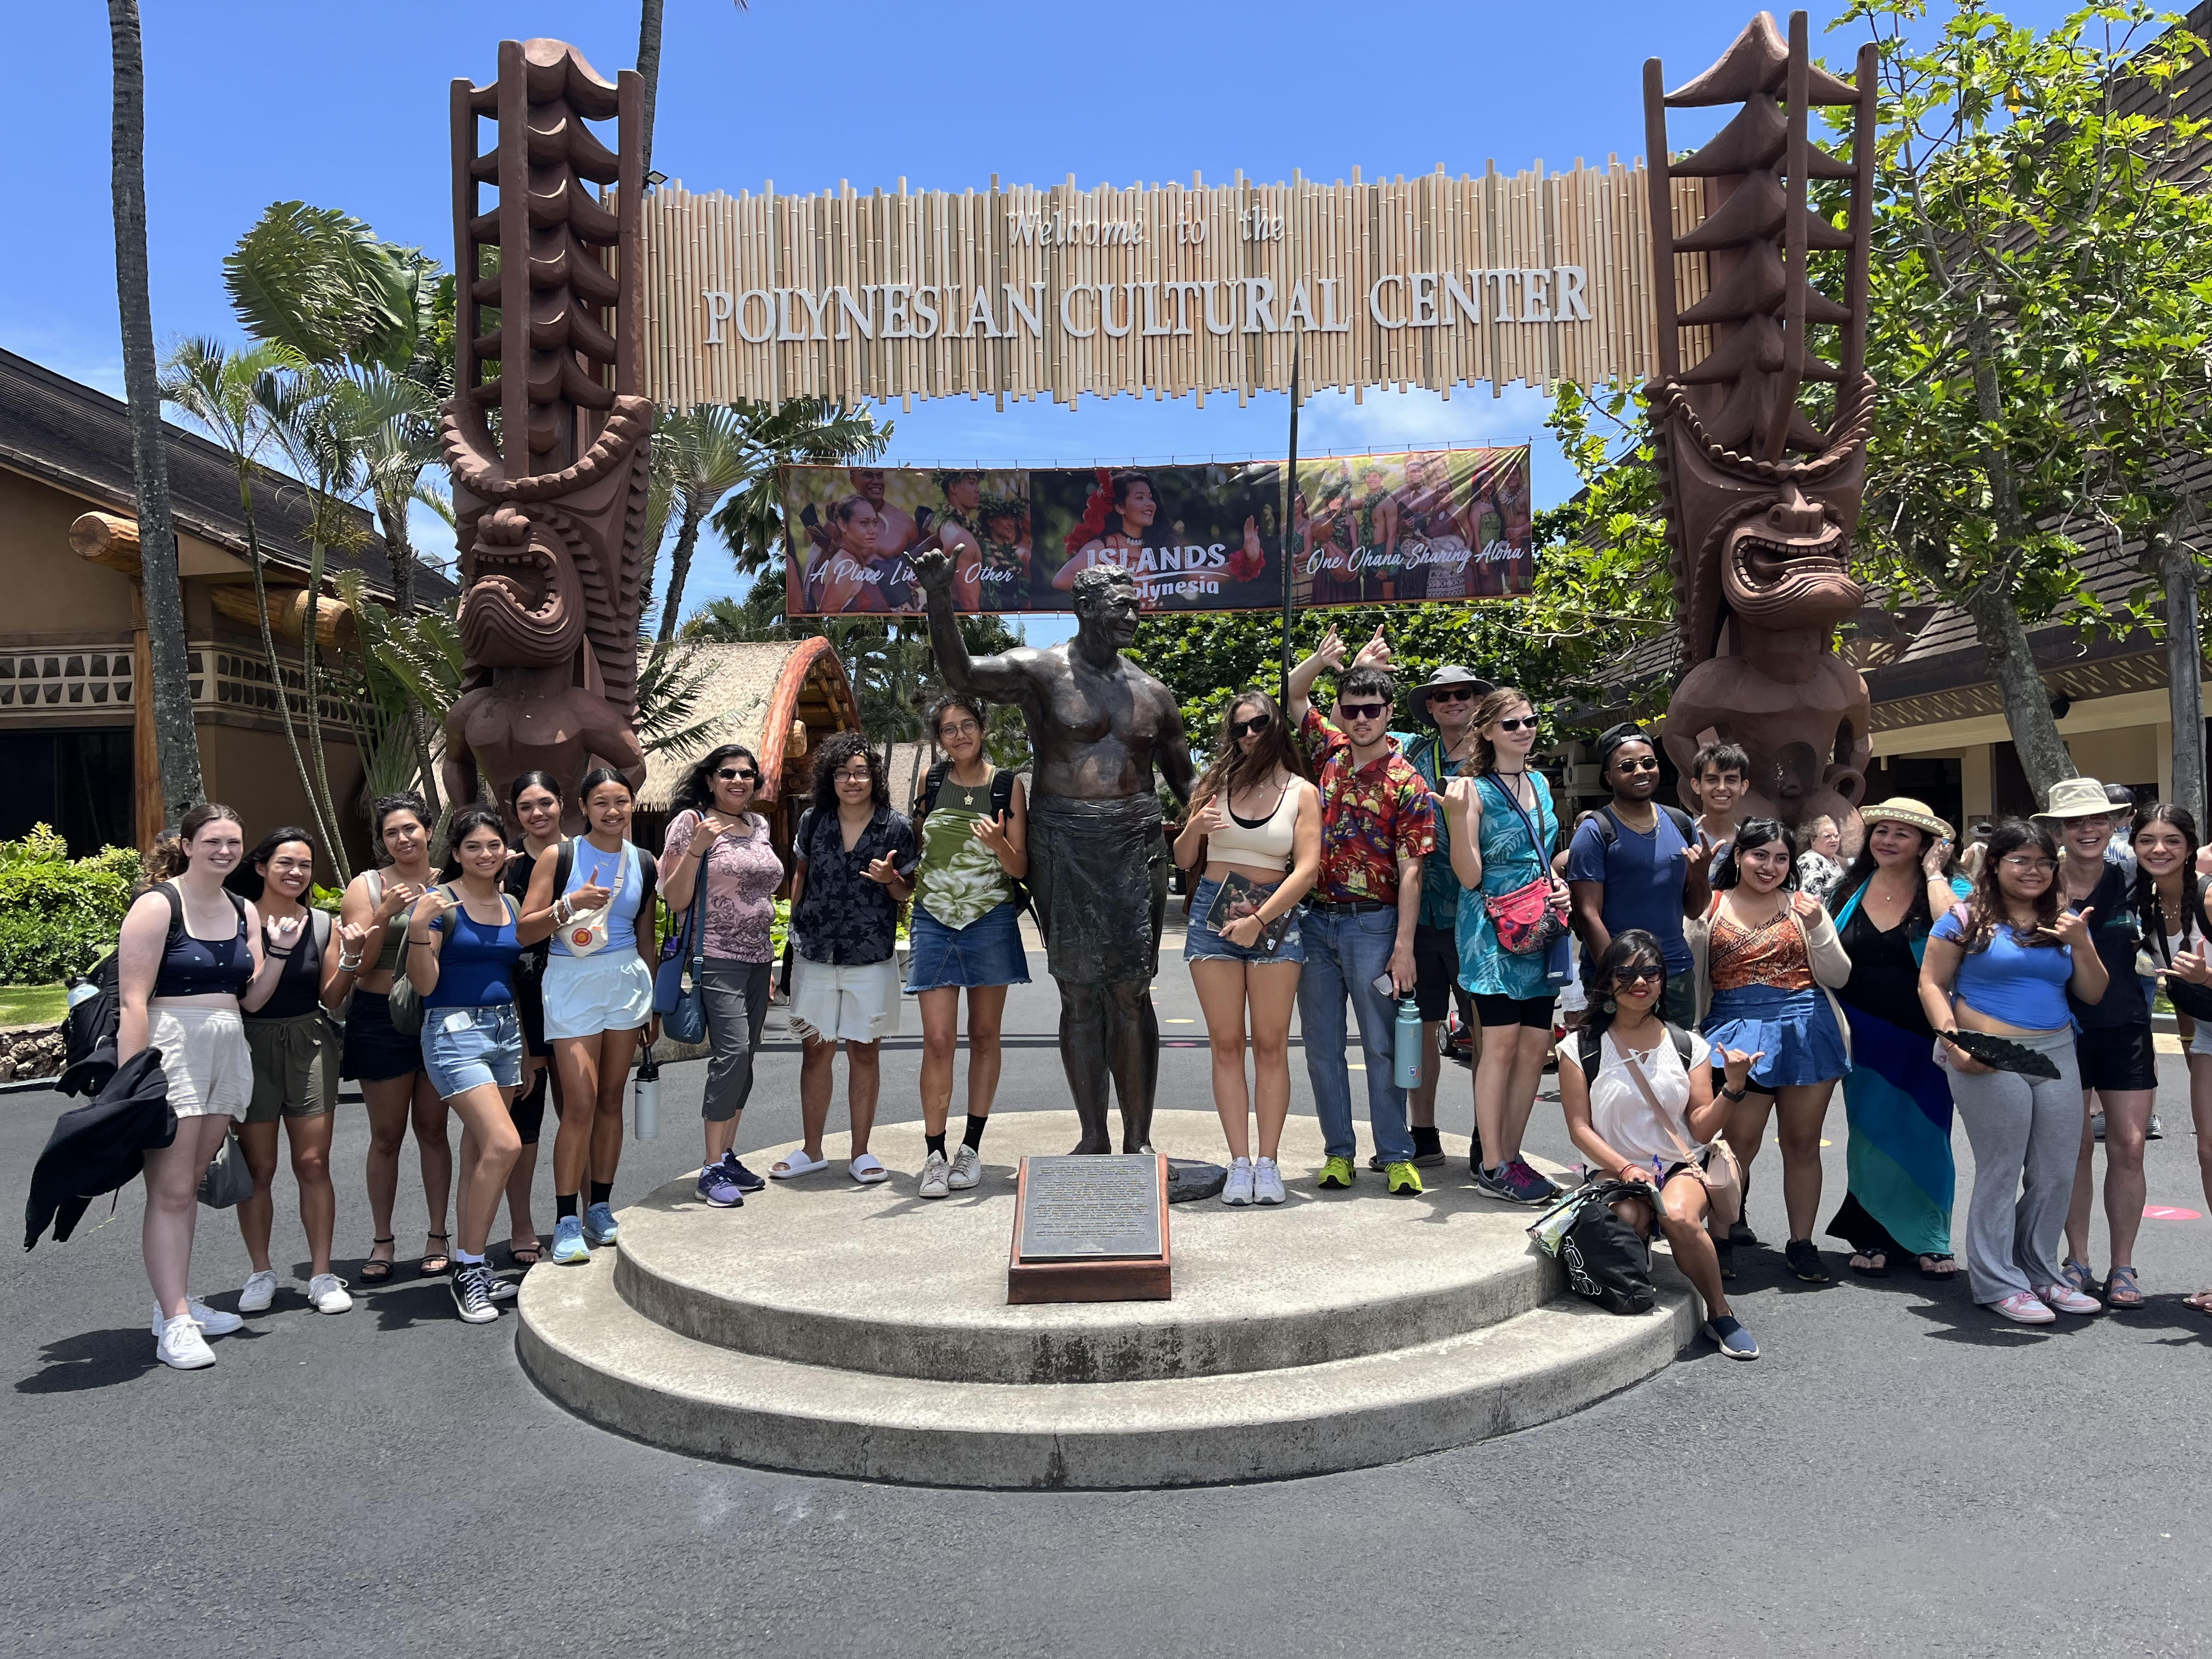 Students in Hawaii